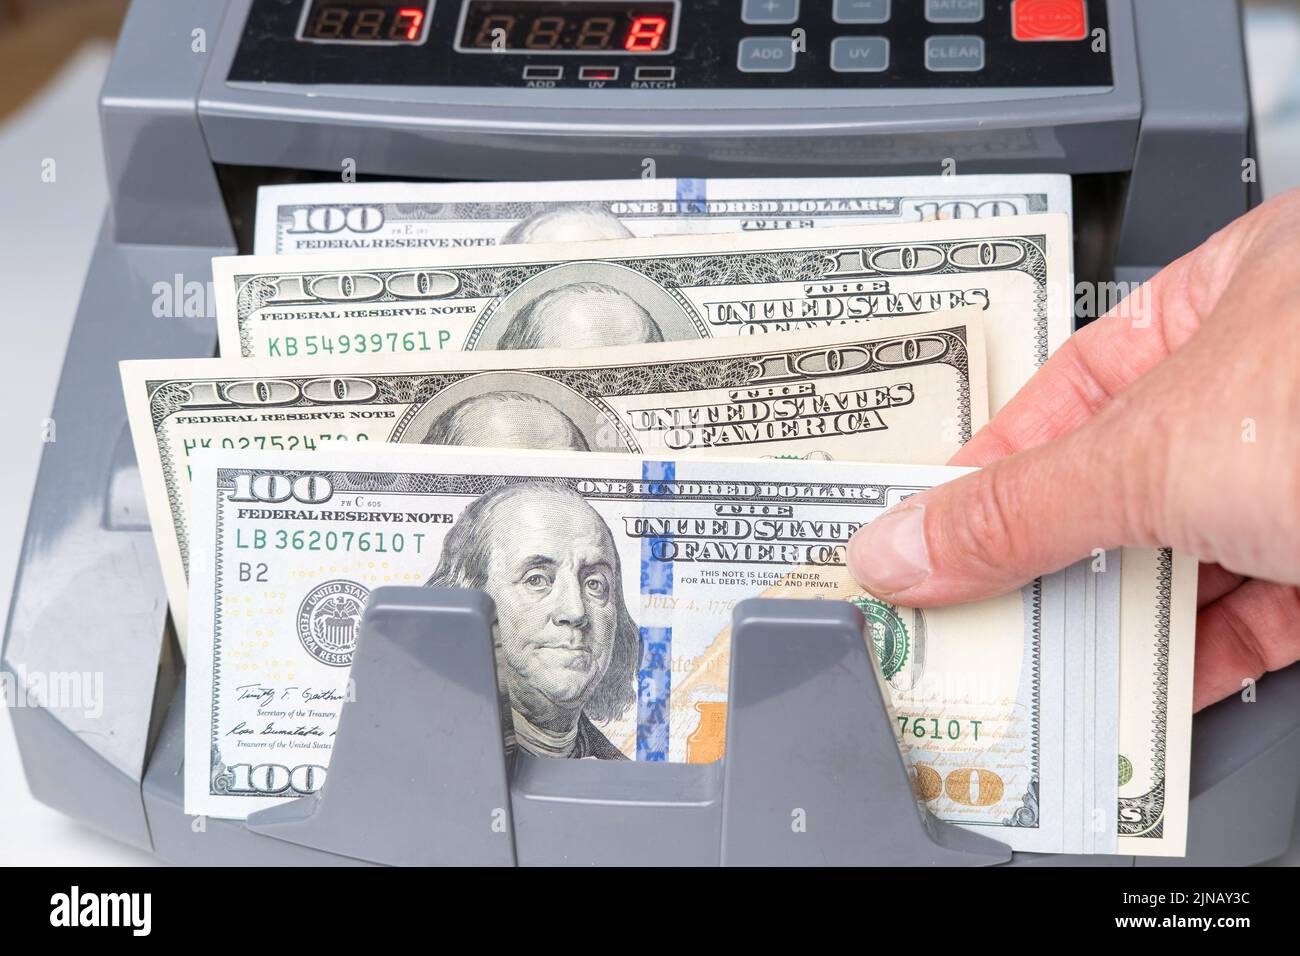 La mano del empleado tomando dólares de la máquina de facturas. Contar dólares usando un contador de dinero electrónico en una sucursal bancaria o intercambiador de divisas. El Foto de stock